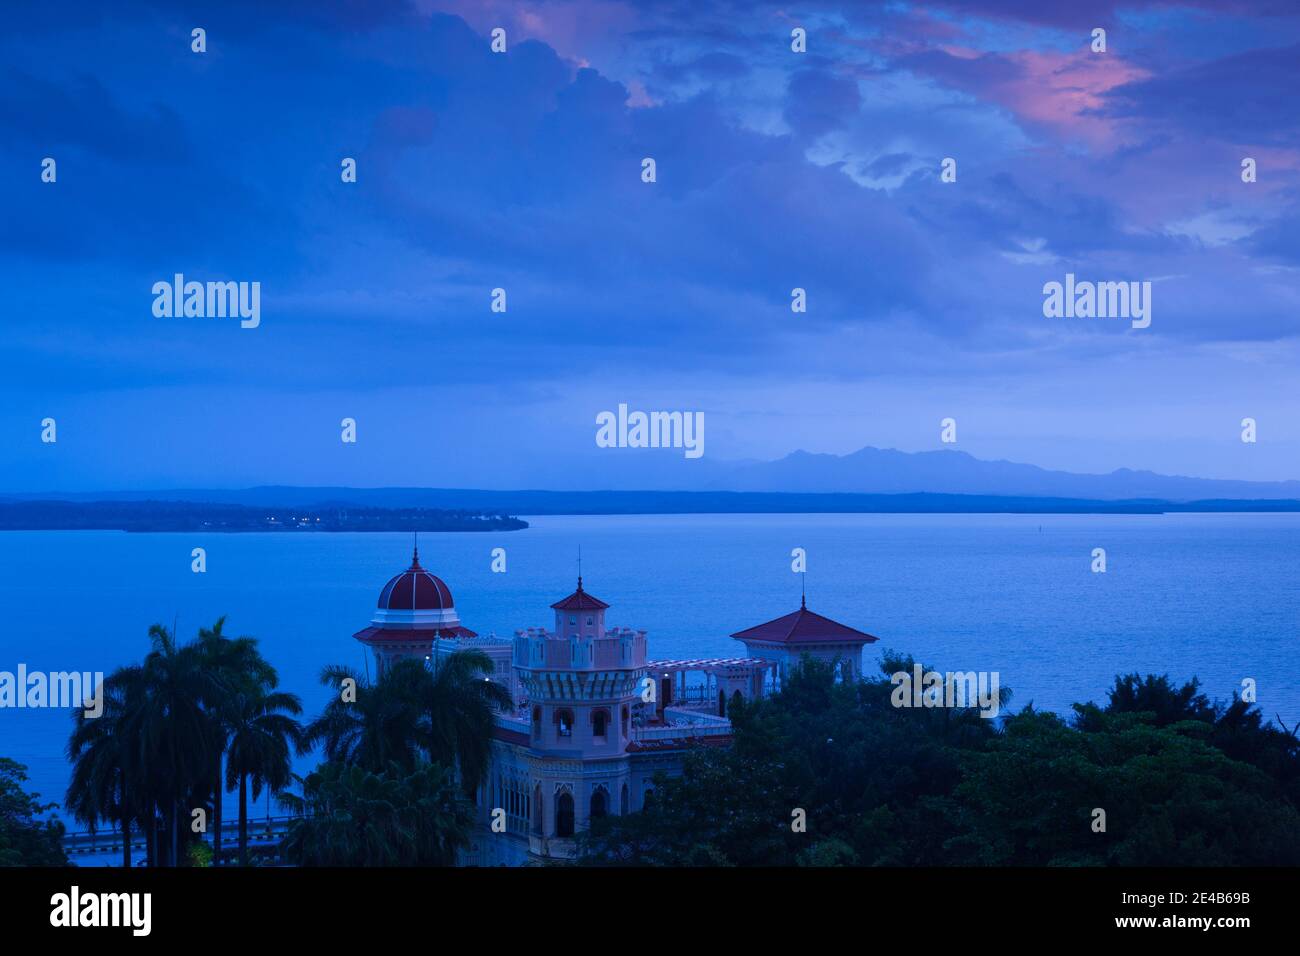 Elevated view of former sugar baron mansion, Palacio De Valle, Punta Gorda, Cienfuegos, Cuba Stock Photo